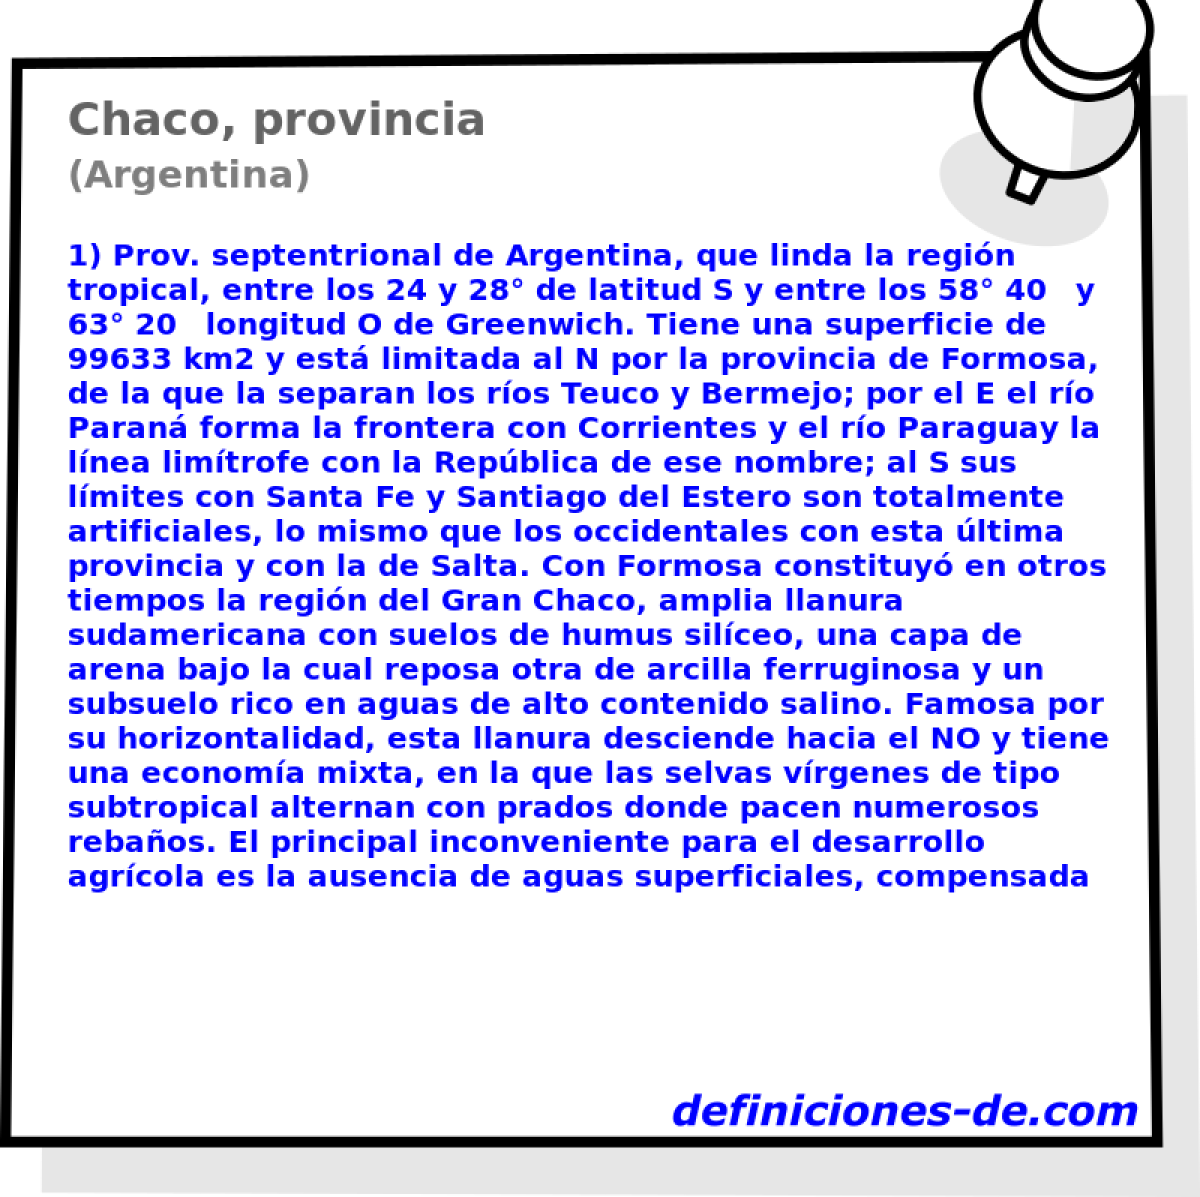 Chaco, provincia (Argentina)